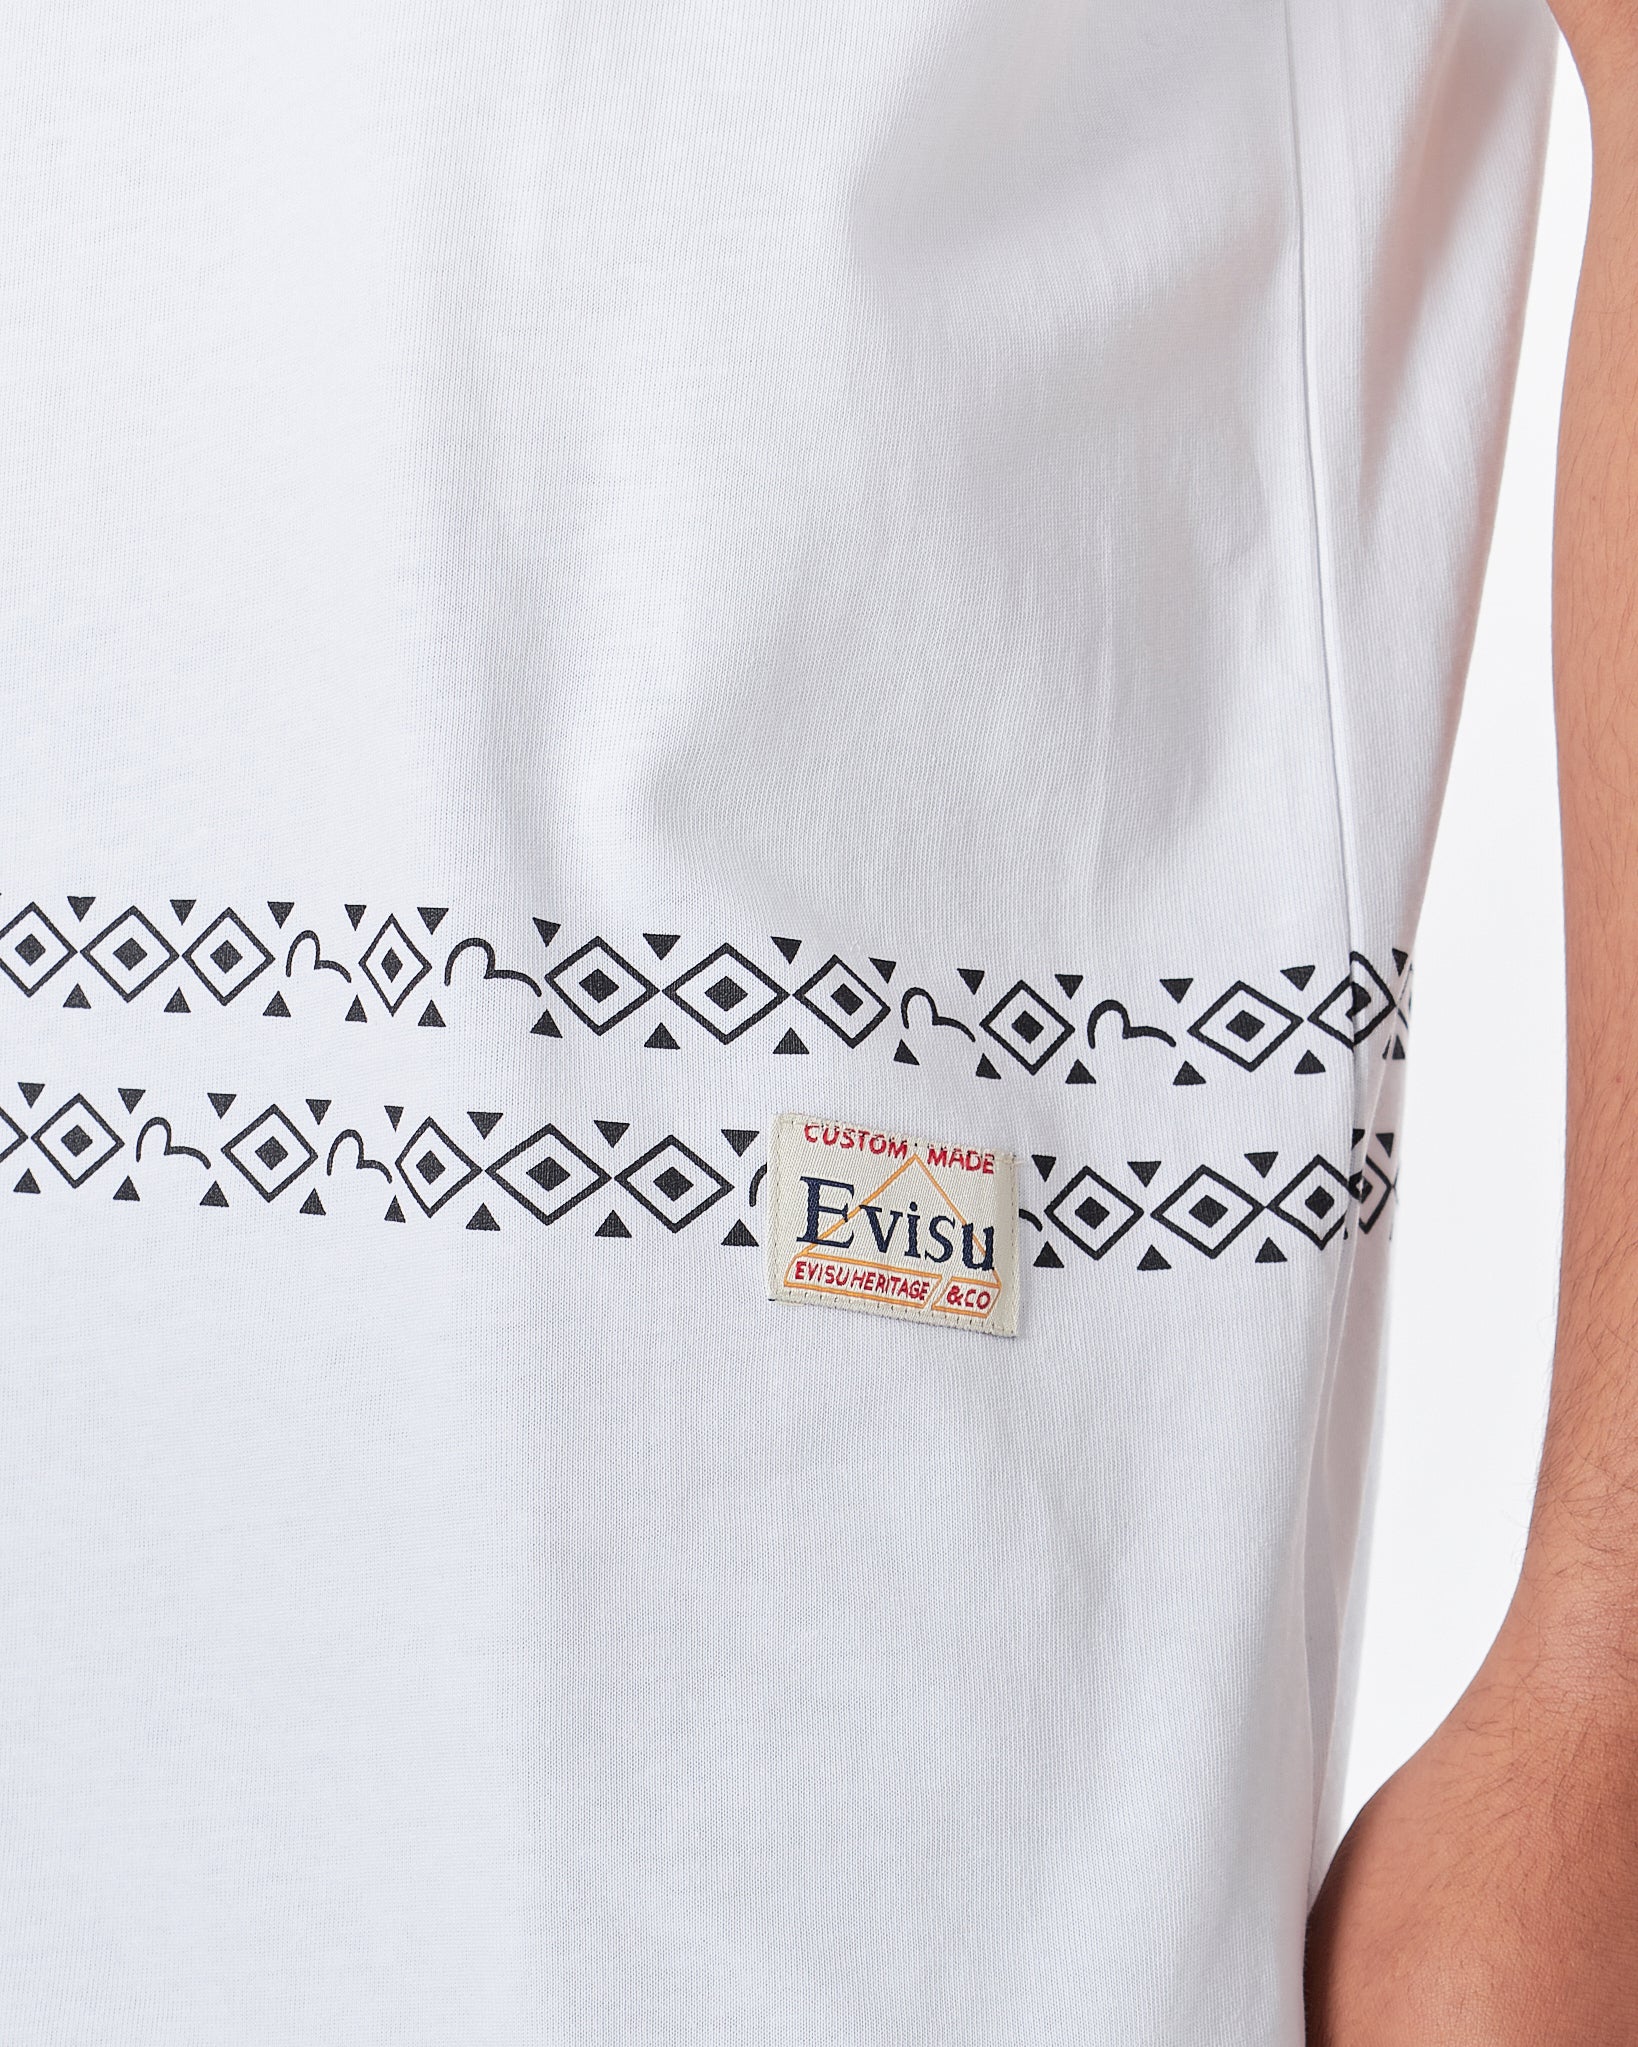 EVI Graffiti Kamon Printed Men White T-Shirt 18.90